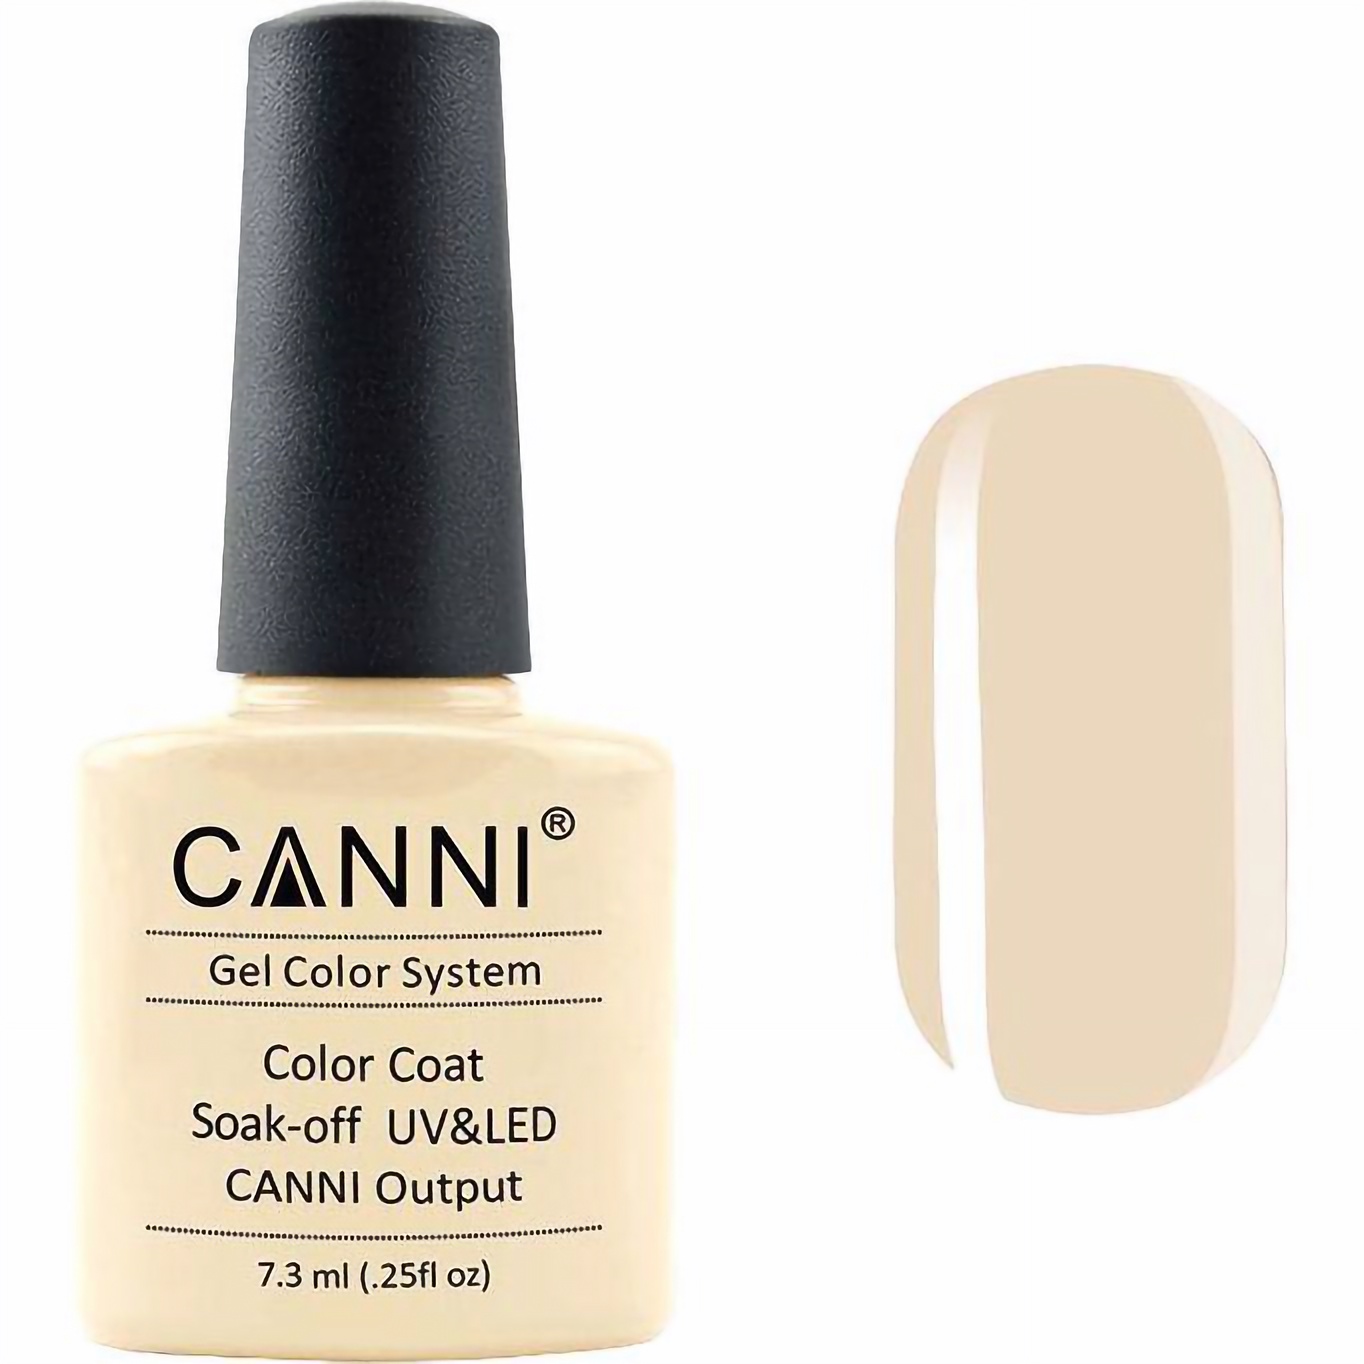 Гель-лак Canni Color Coat Soak-off UV&LED 173 темно-кремовий 7.3 мл - фото 1